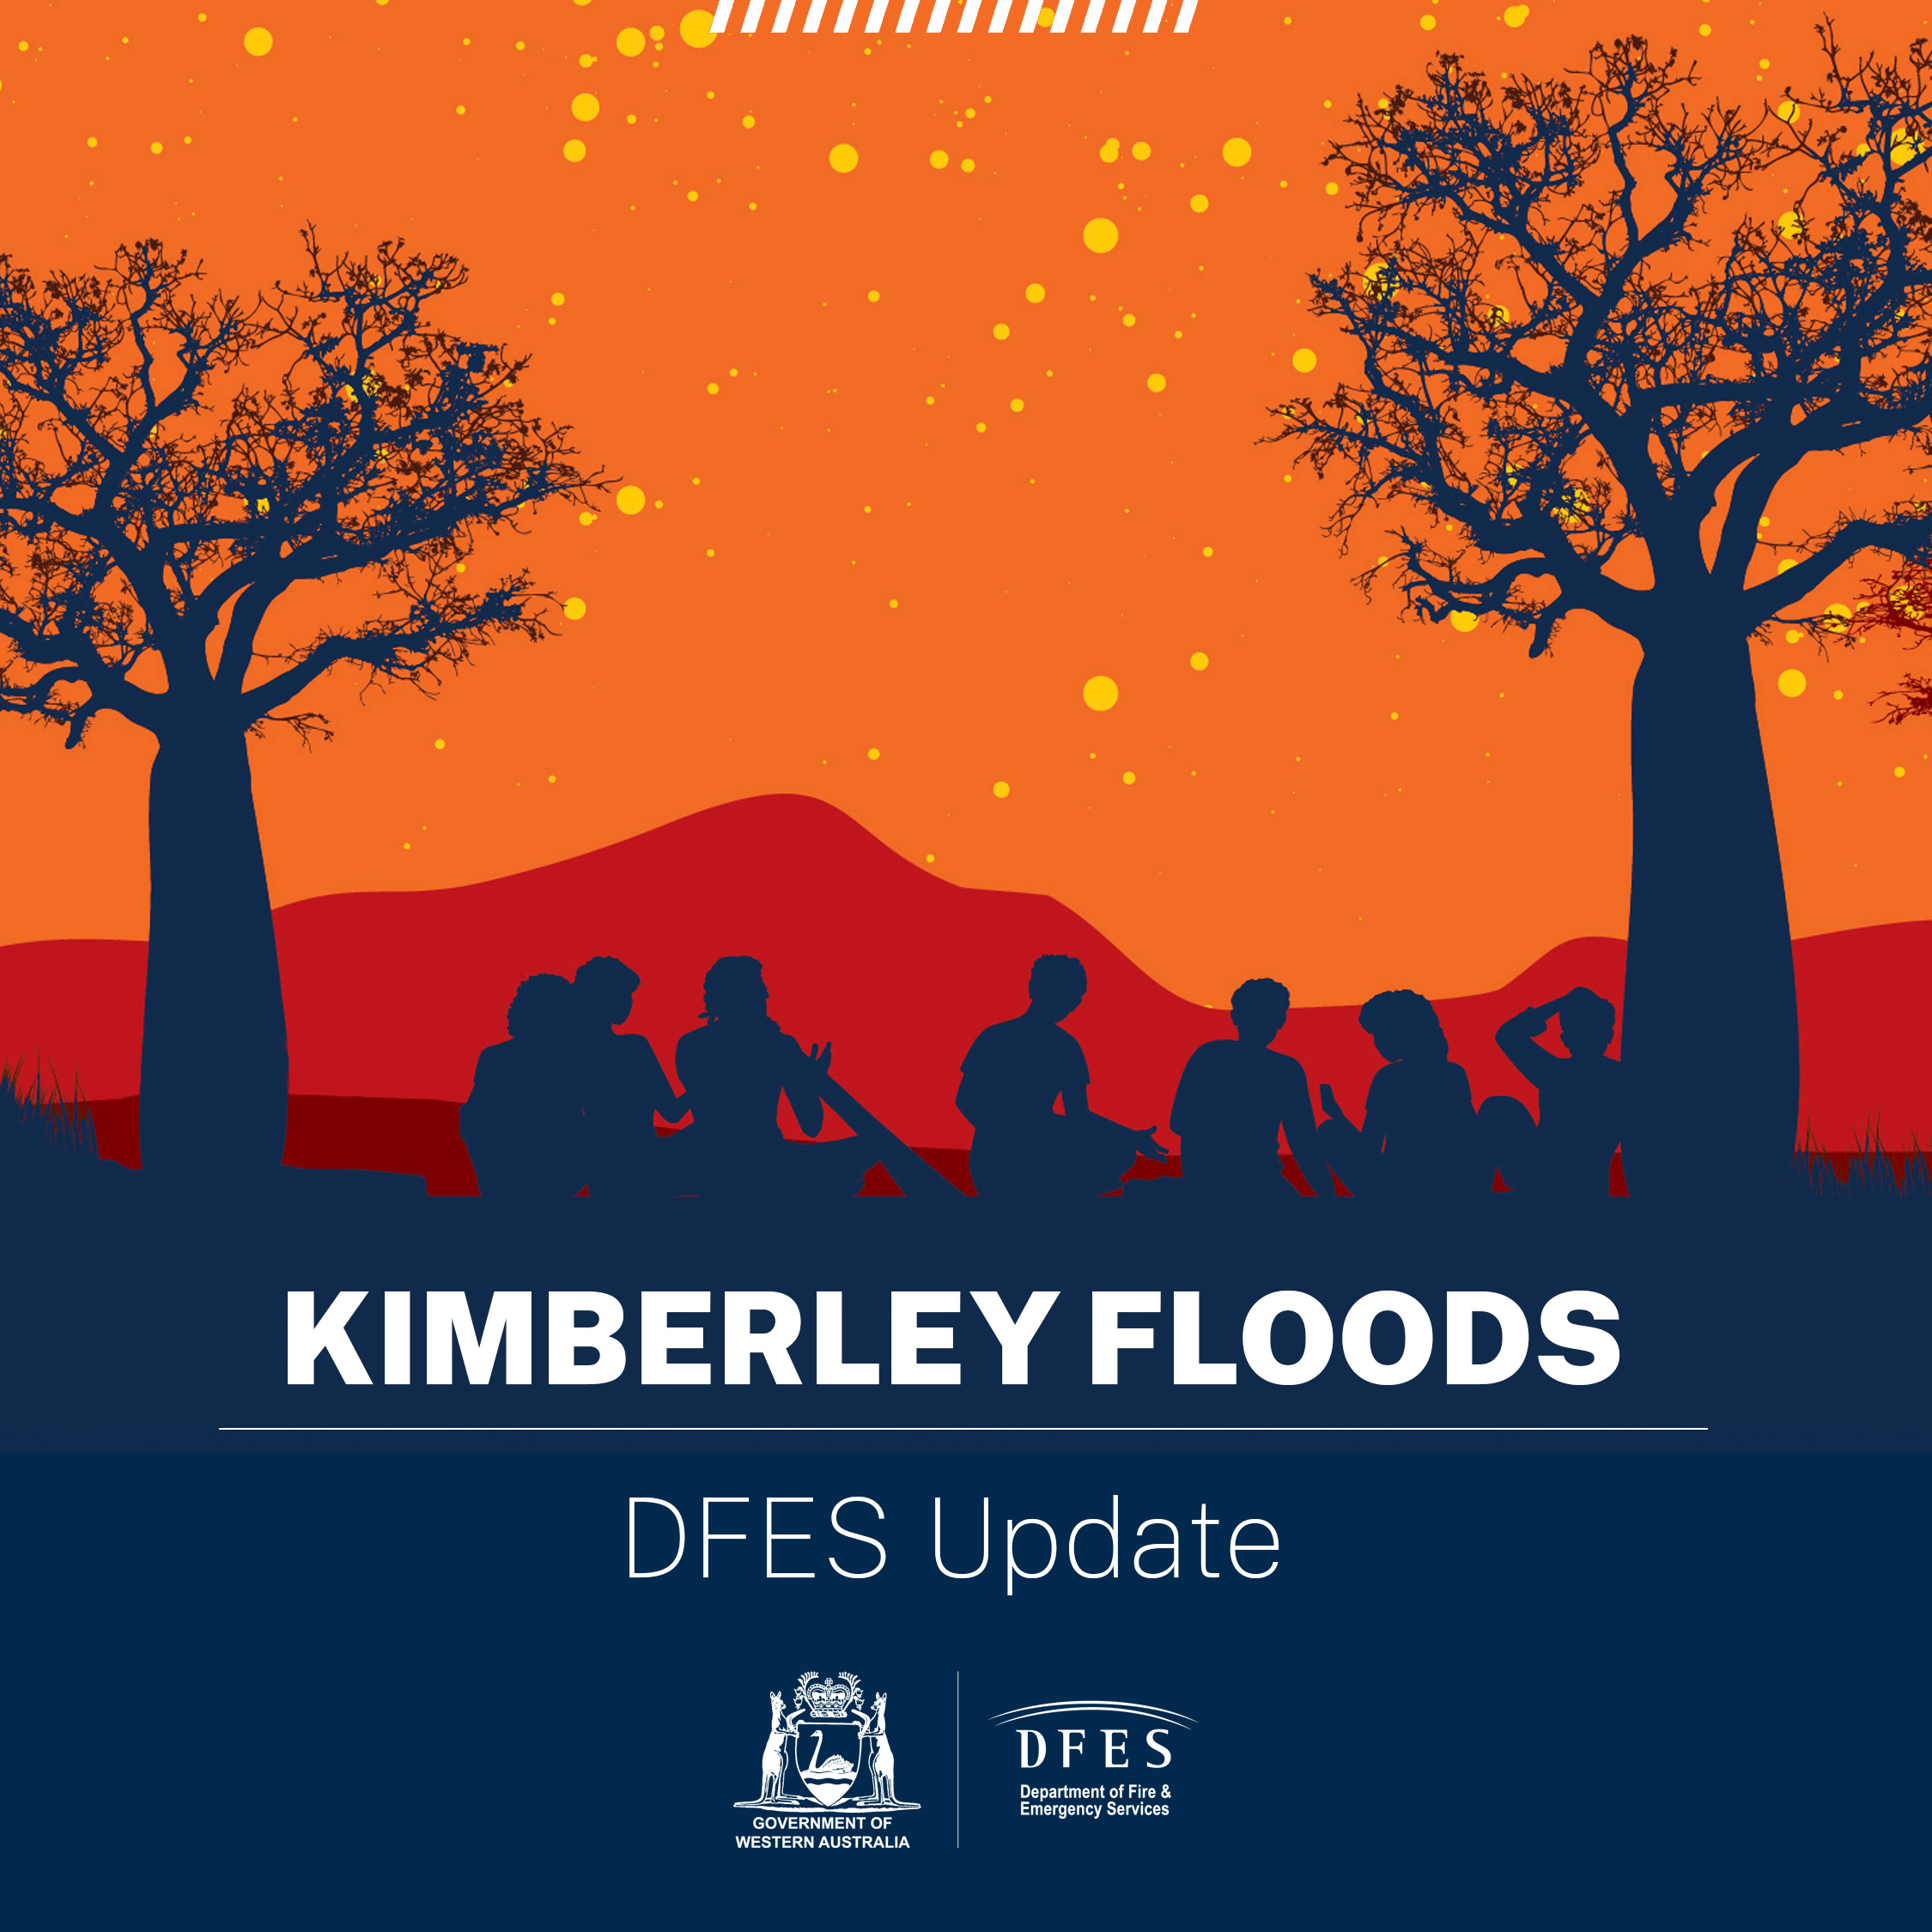 Kimberley Floods DFES Update - Social Tile Group.jpg